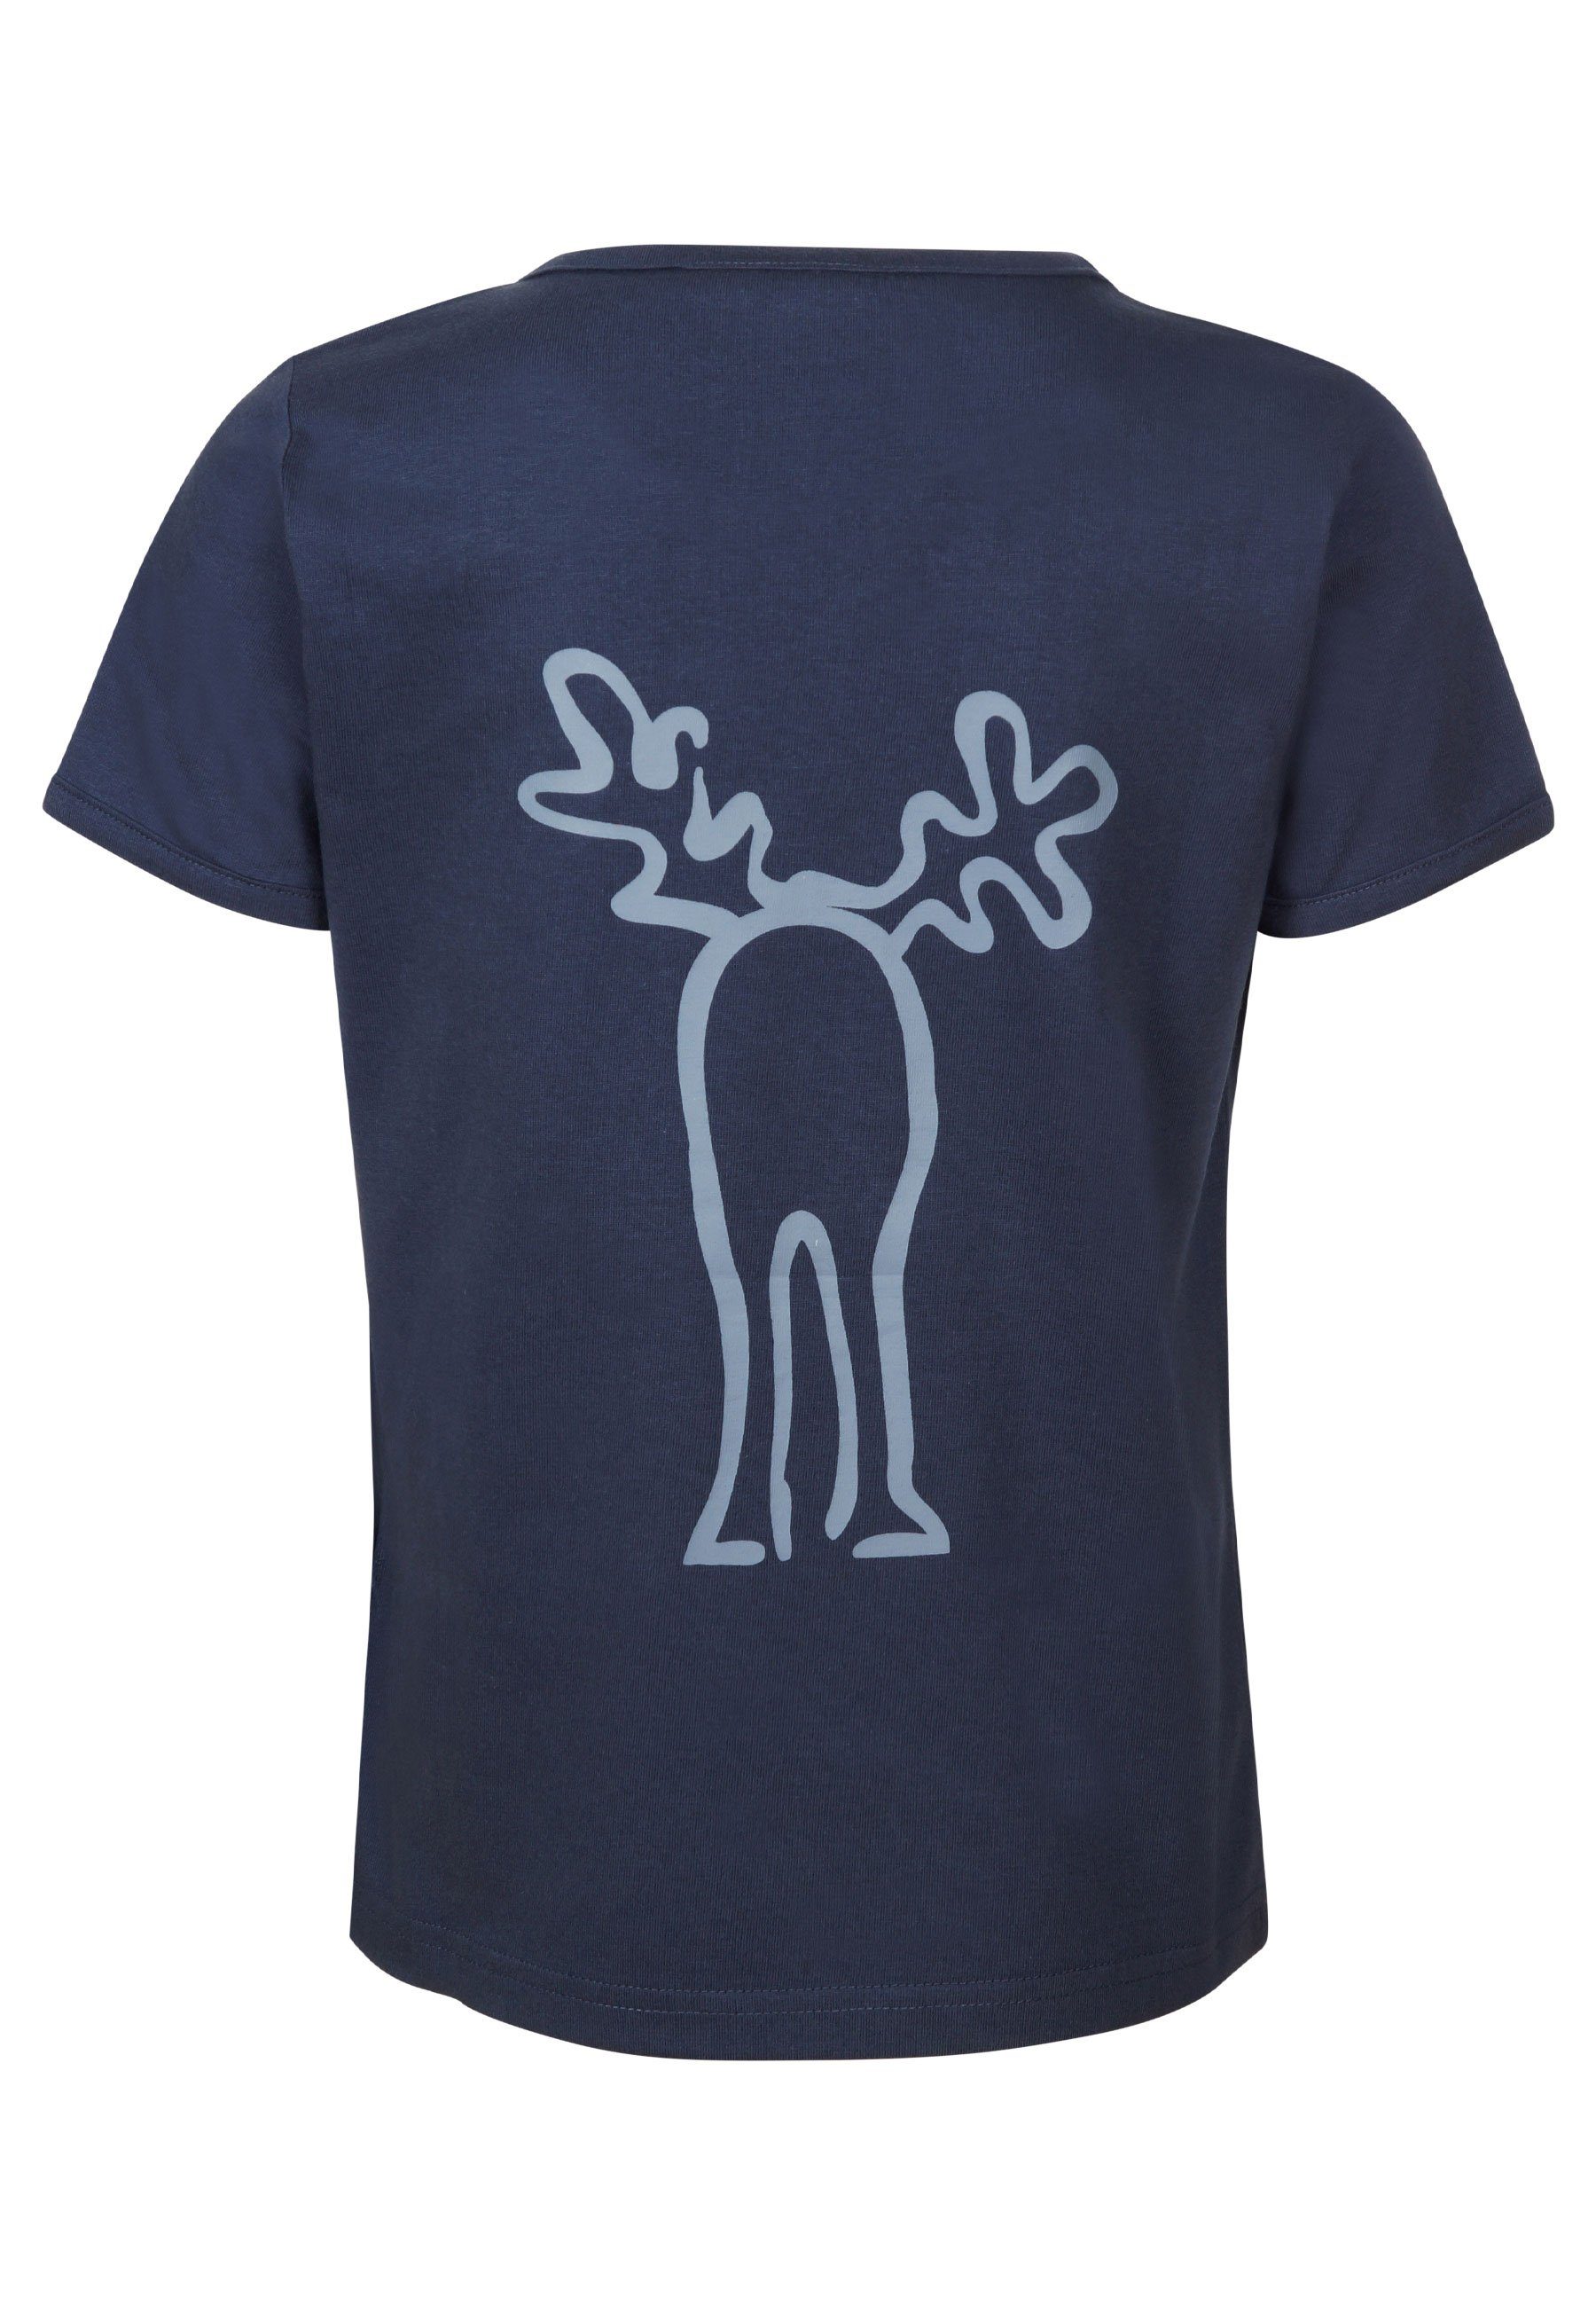 Retro Brust ashblue Elkline - darkblue Rudolfinchen und Elch Rücken Print T-Shirt